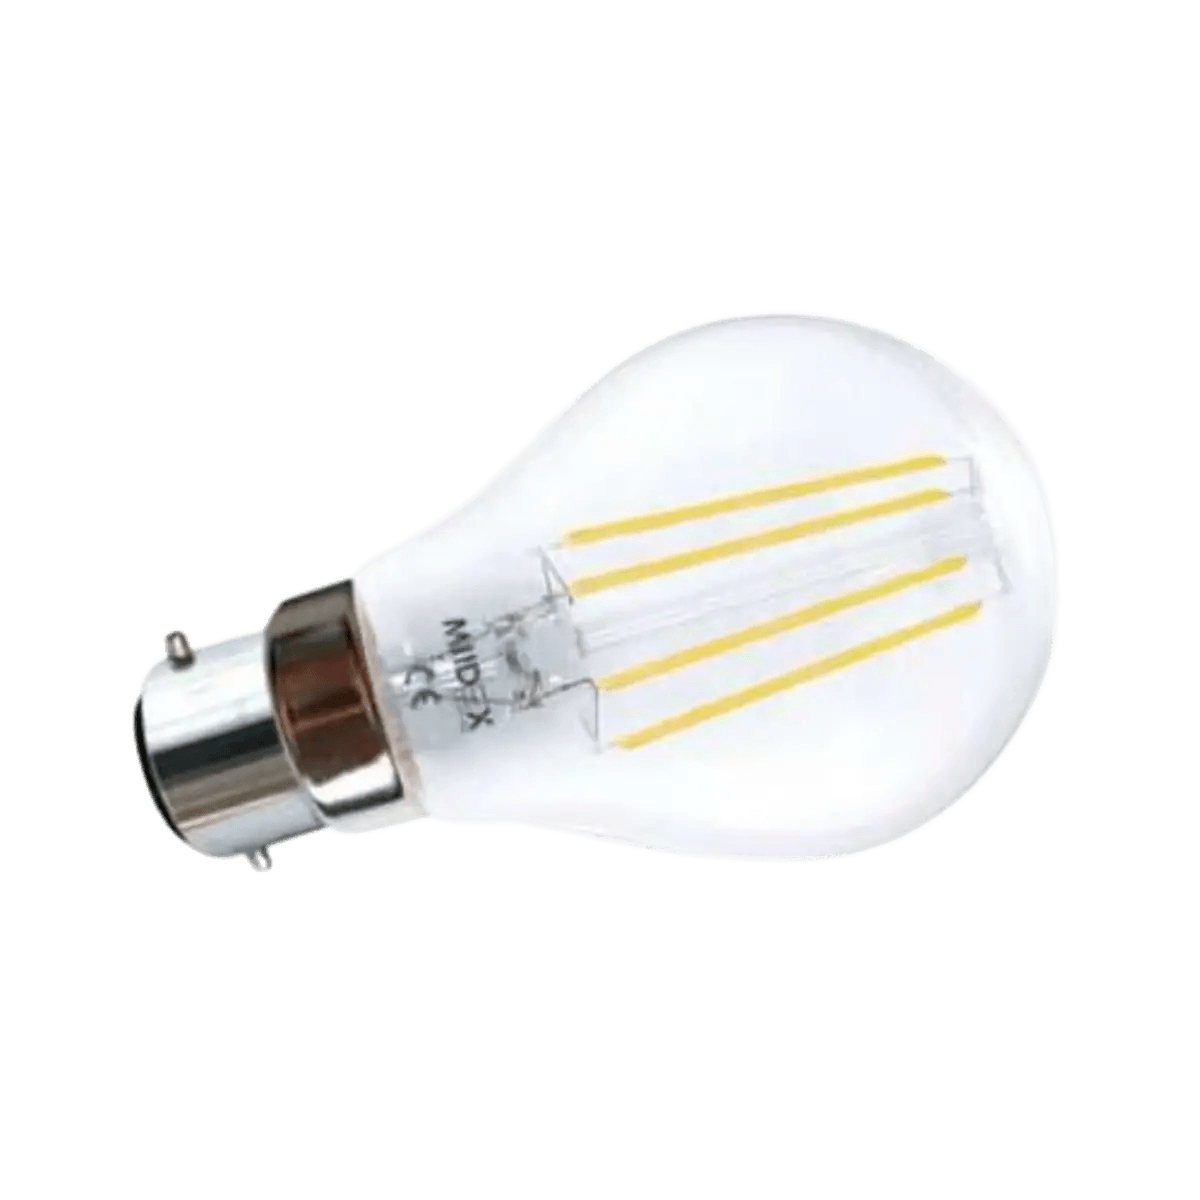 Accessoires Energie - Ampoule LED B22 220V AC Filament 8W